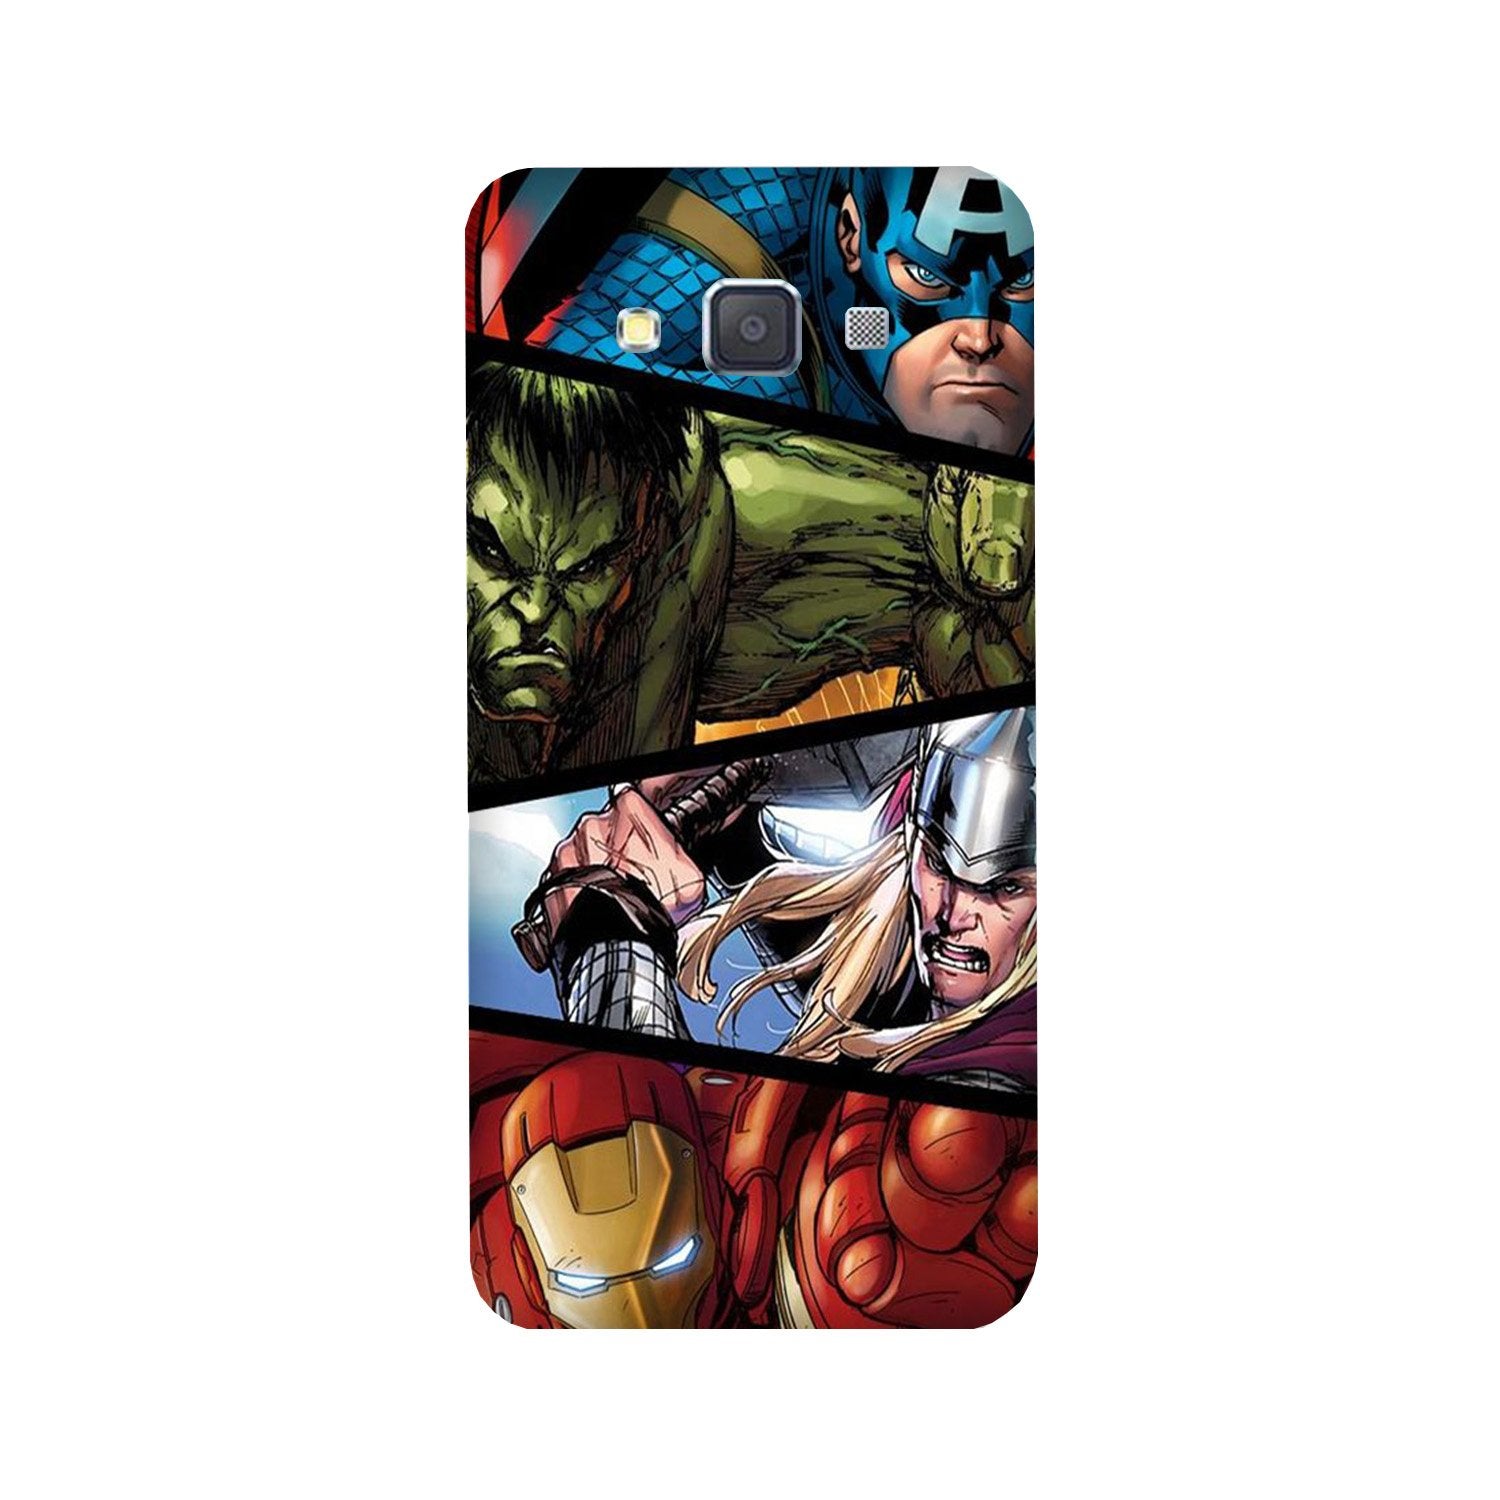 Avengers Superhero Case for Galaxy E5(Design - 124)